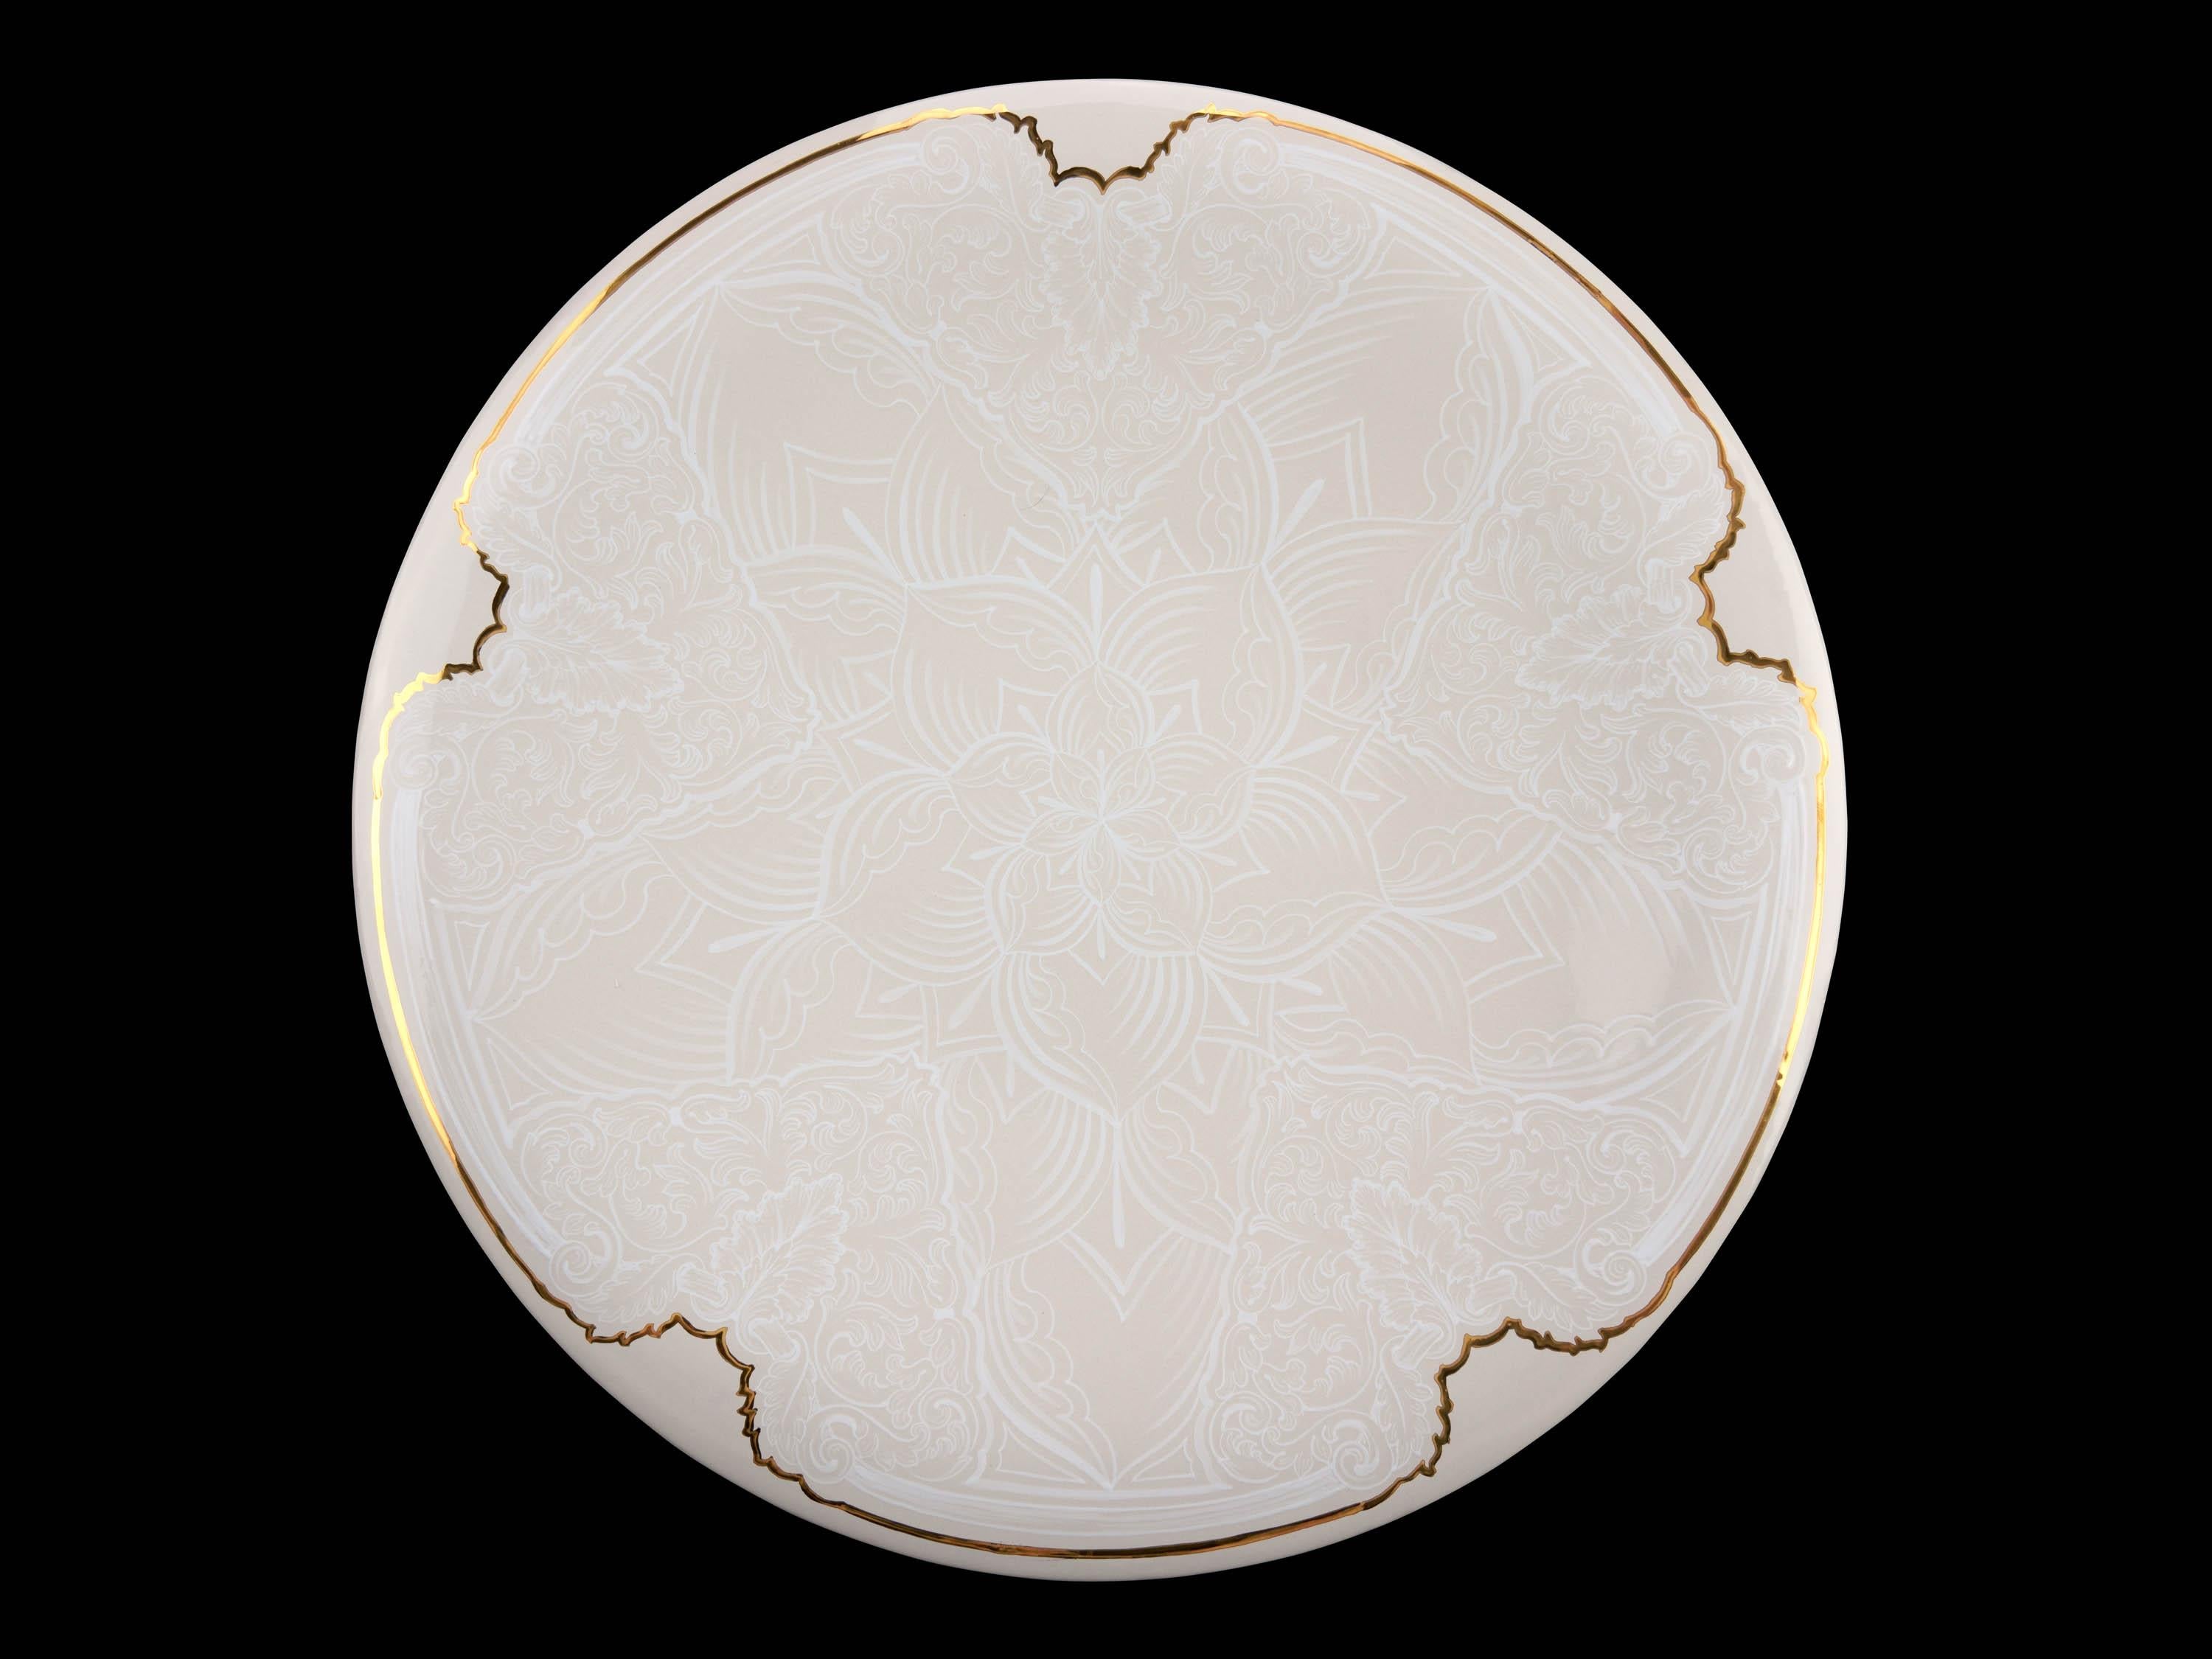 Grande assiette en céramique blanche et lustrée à l'or, peinte à la main en Italie et réalisée au tour de potier. Cette assiette en majolique peut être utilisée comme centre de table, plateau, coupe de fruits, comme assiette murale décorative. La